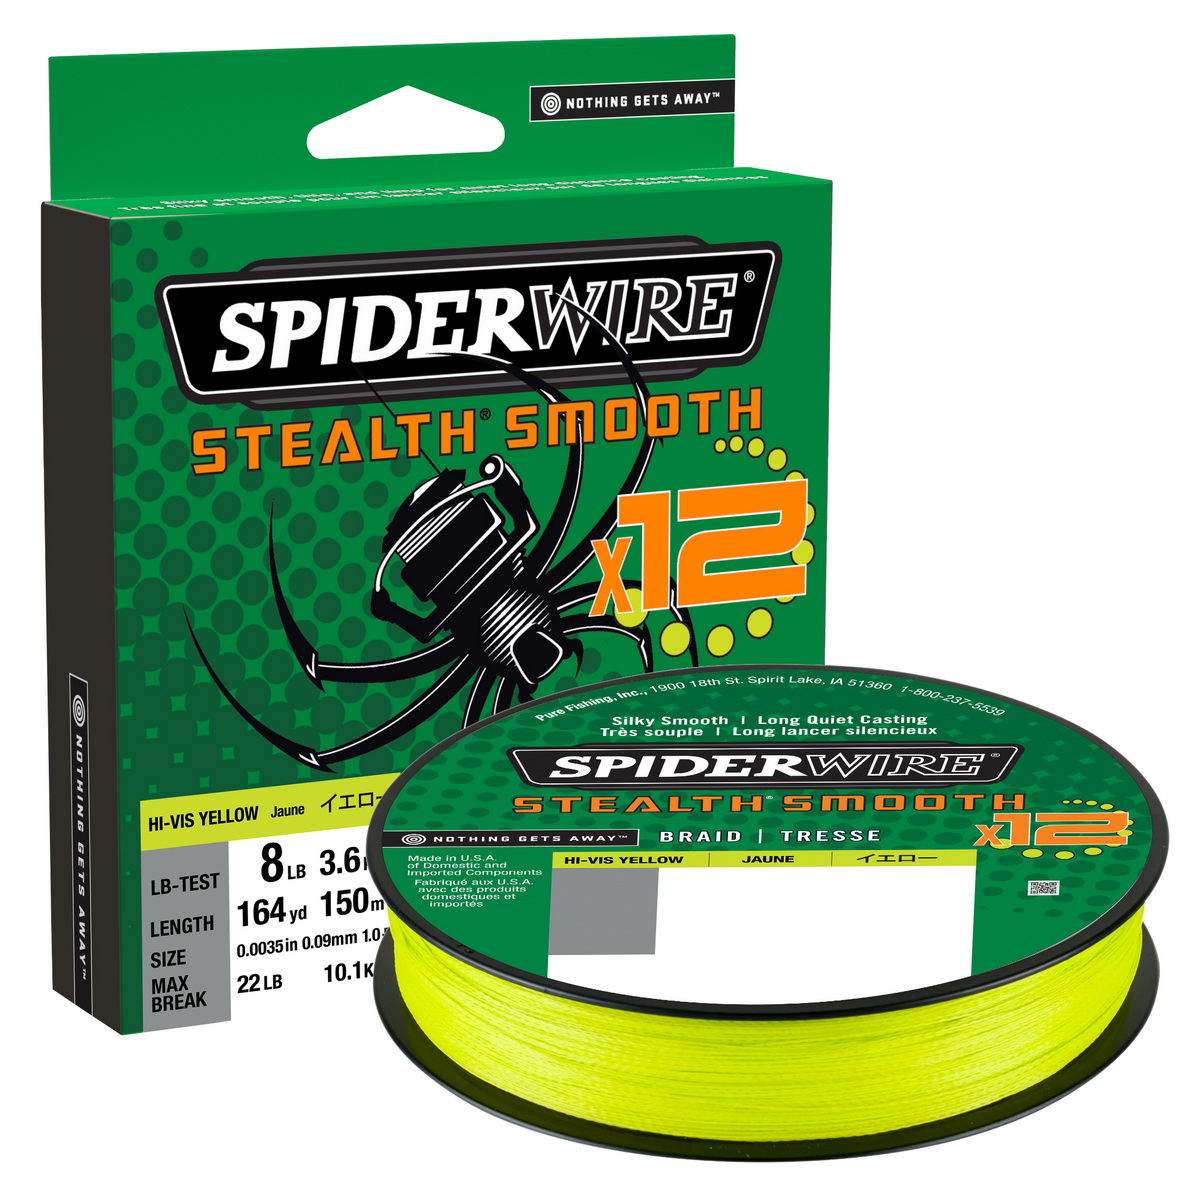 SPIDERWIRE Stealth Smooth 12 Braid 0,19mm 150m HI-Vis Yellow 18,0kg geflochten